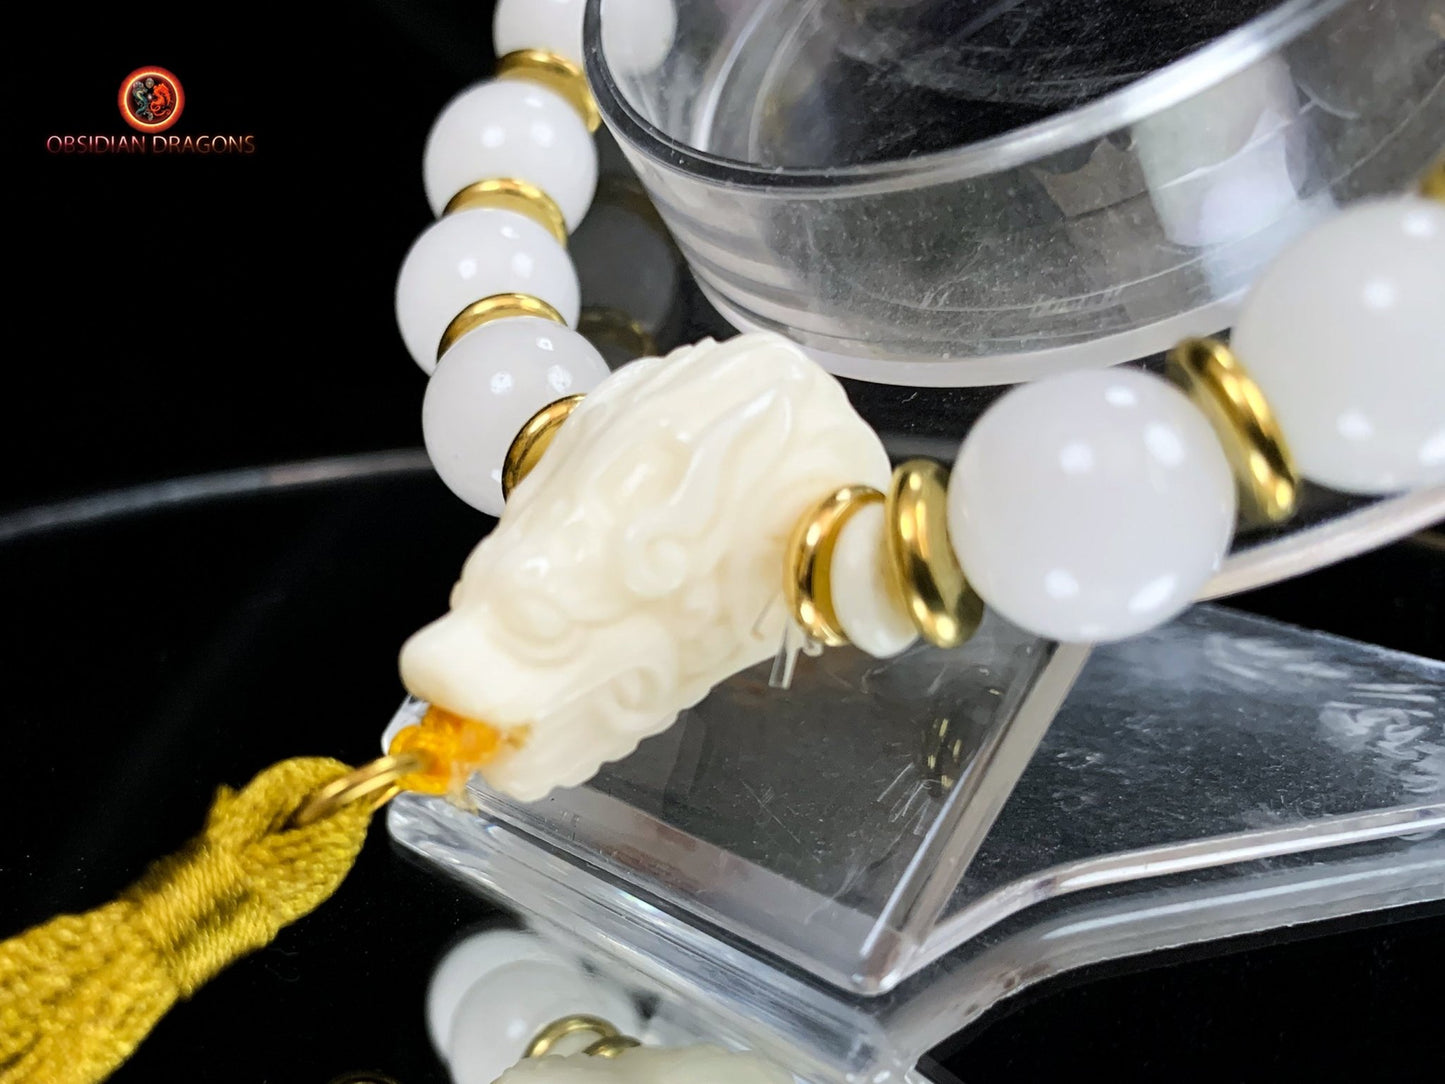 Bracelet en jade blanc et Charoïte- Protection du dragon | obsidian dragons